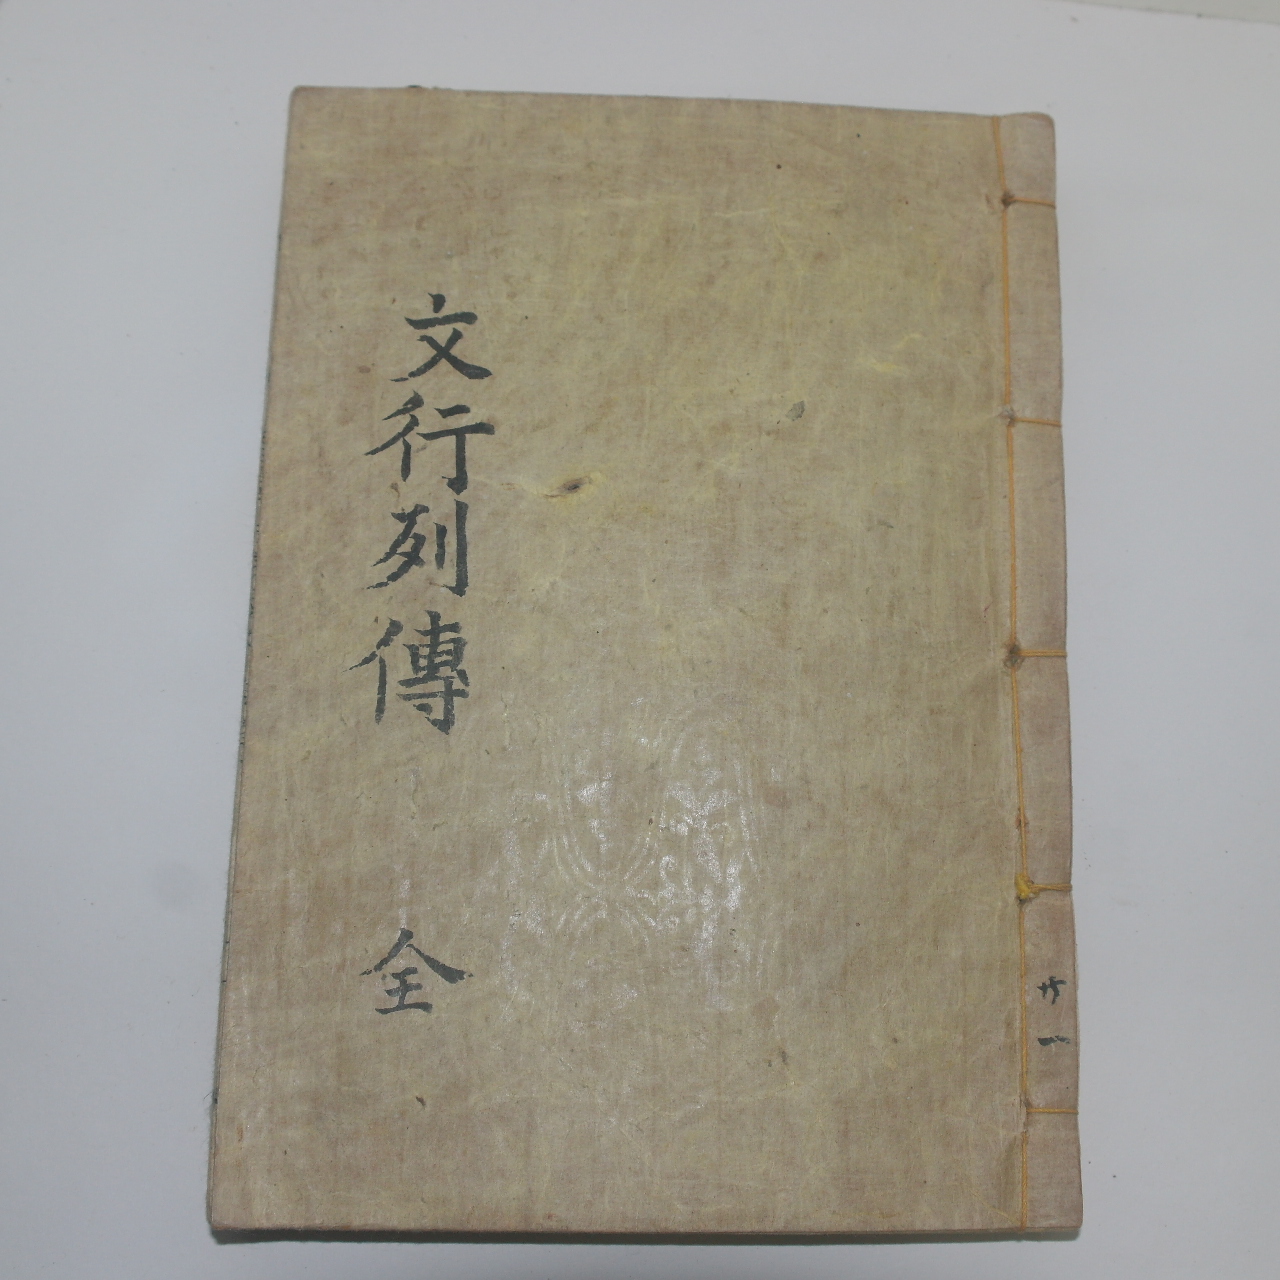 1900년 목판본 창녕성씨문행열전(昌寧成氏文行列傳) 1책완질